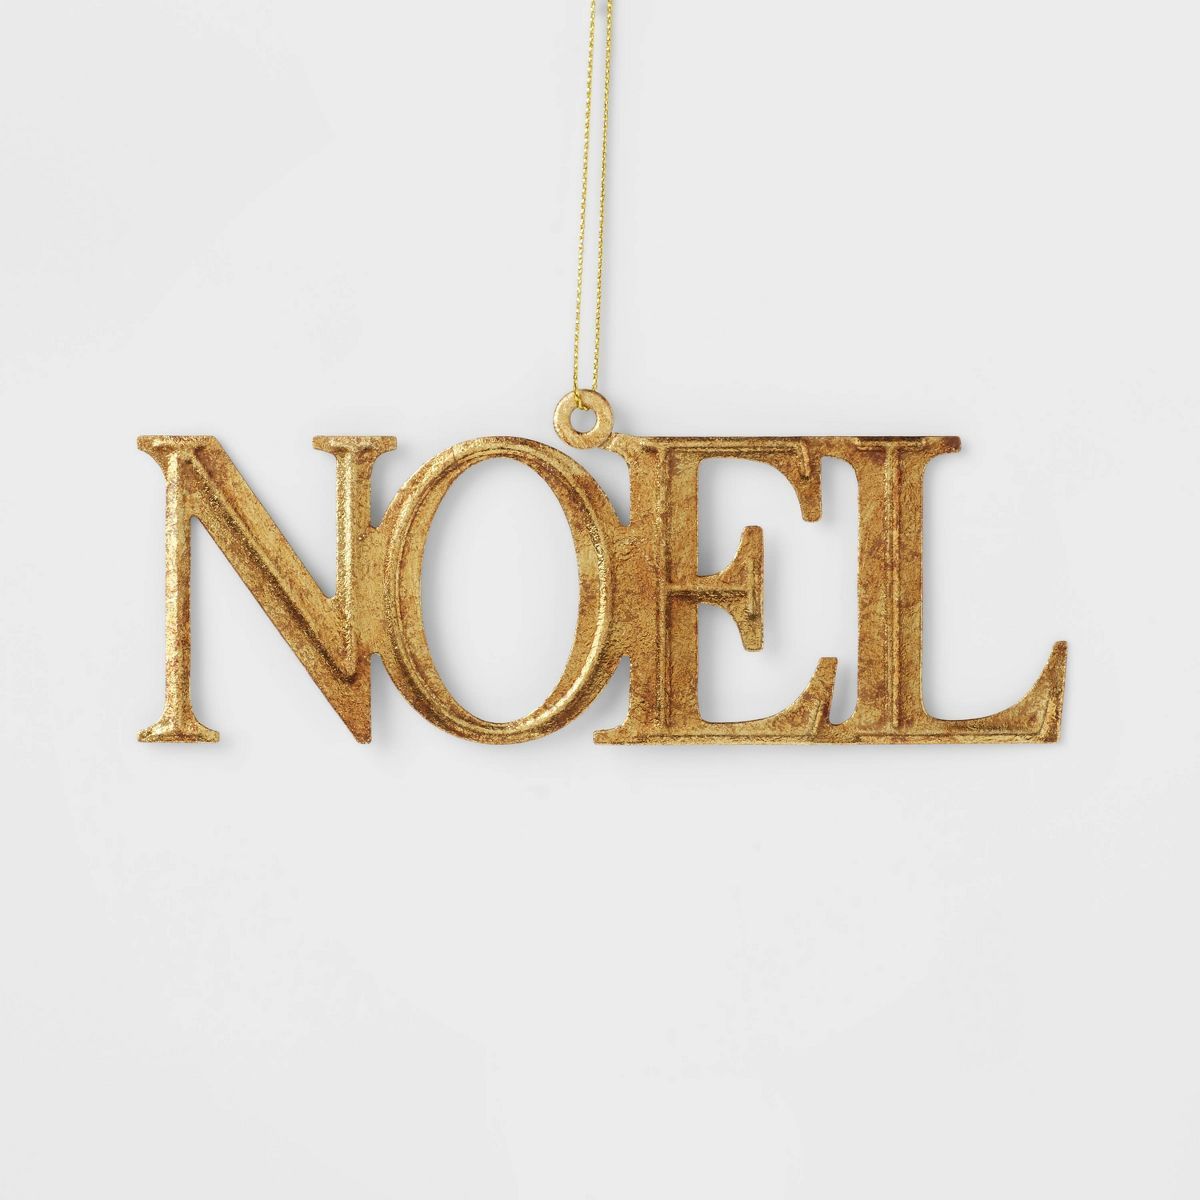 Metal 'Noel' Christmas Tree Ornament Gold - Wondershop™ | Target